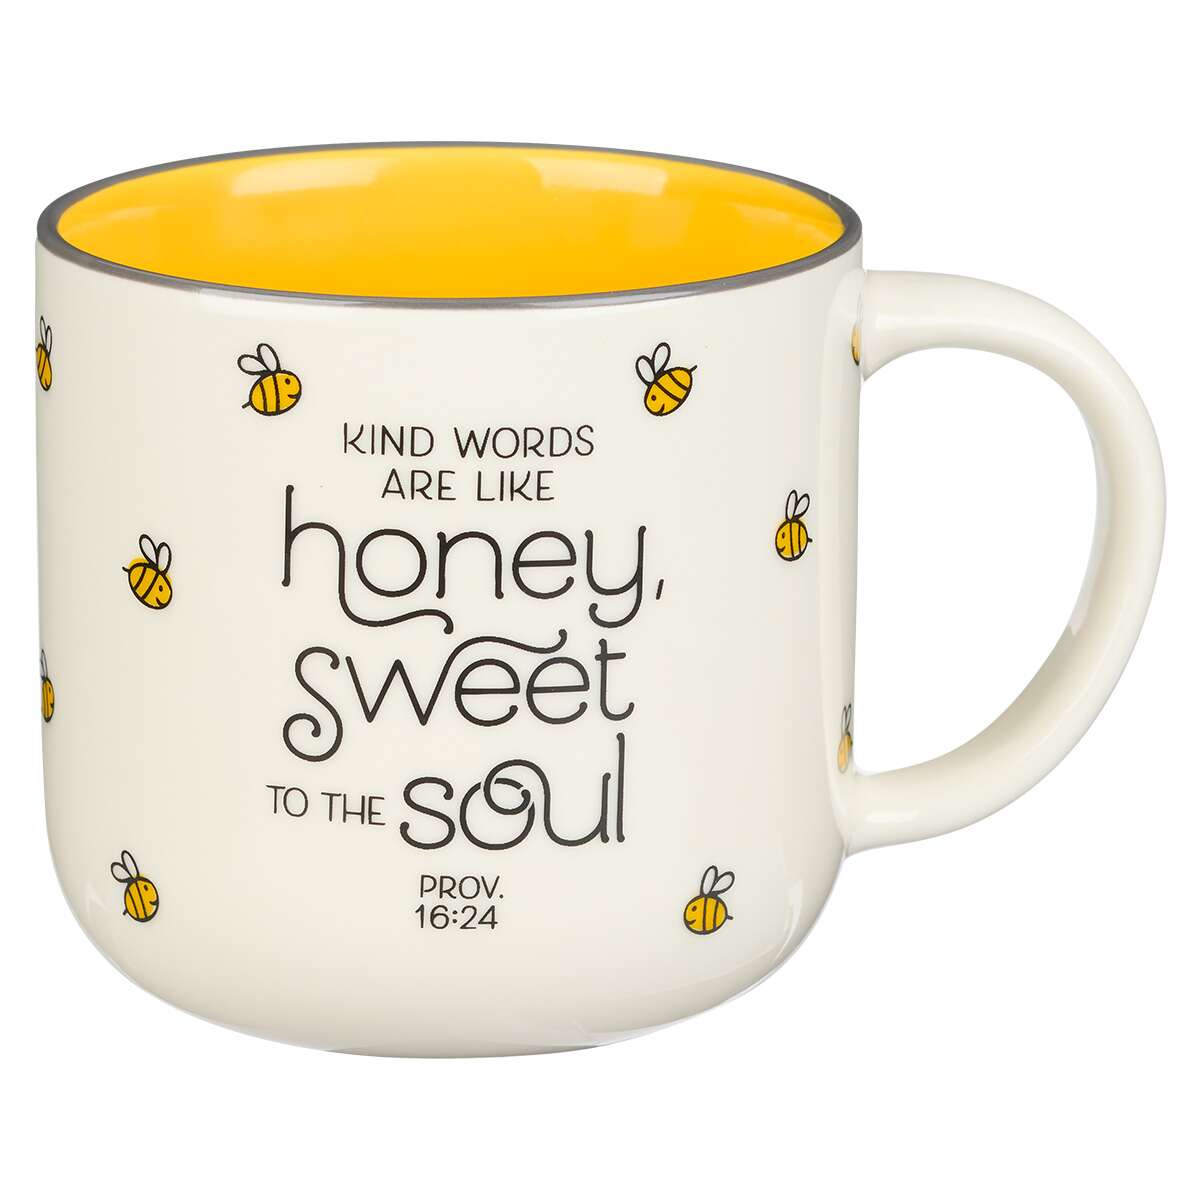 Honey Bee White and Yellow Ceramic Coffee Mug